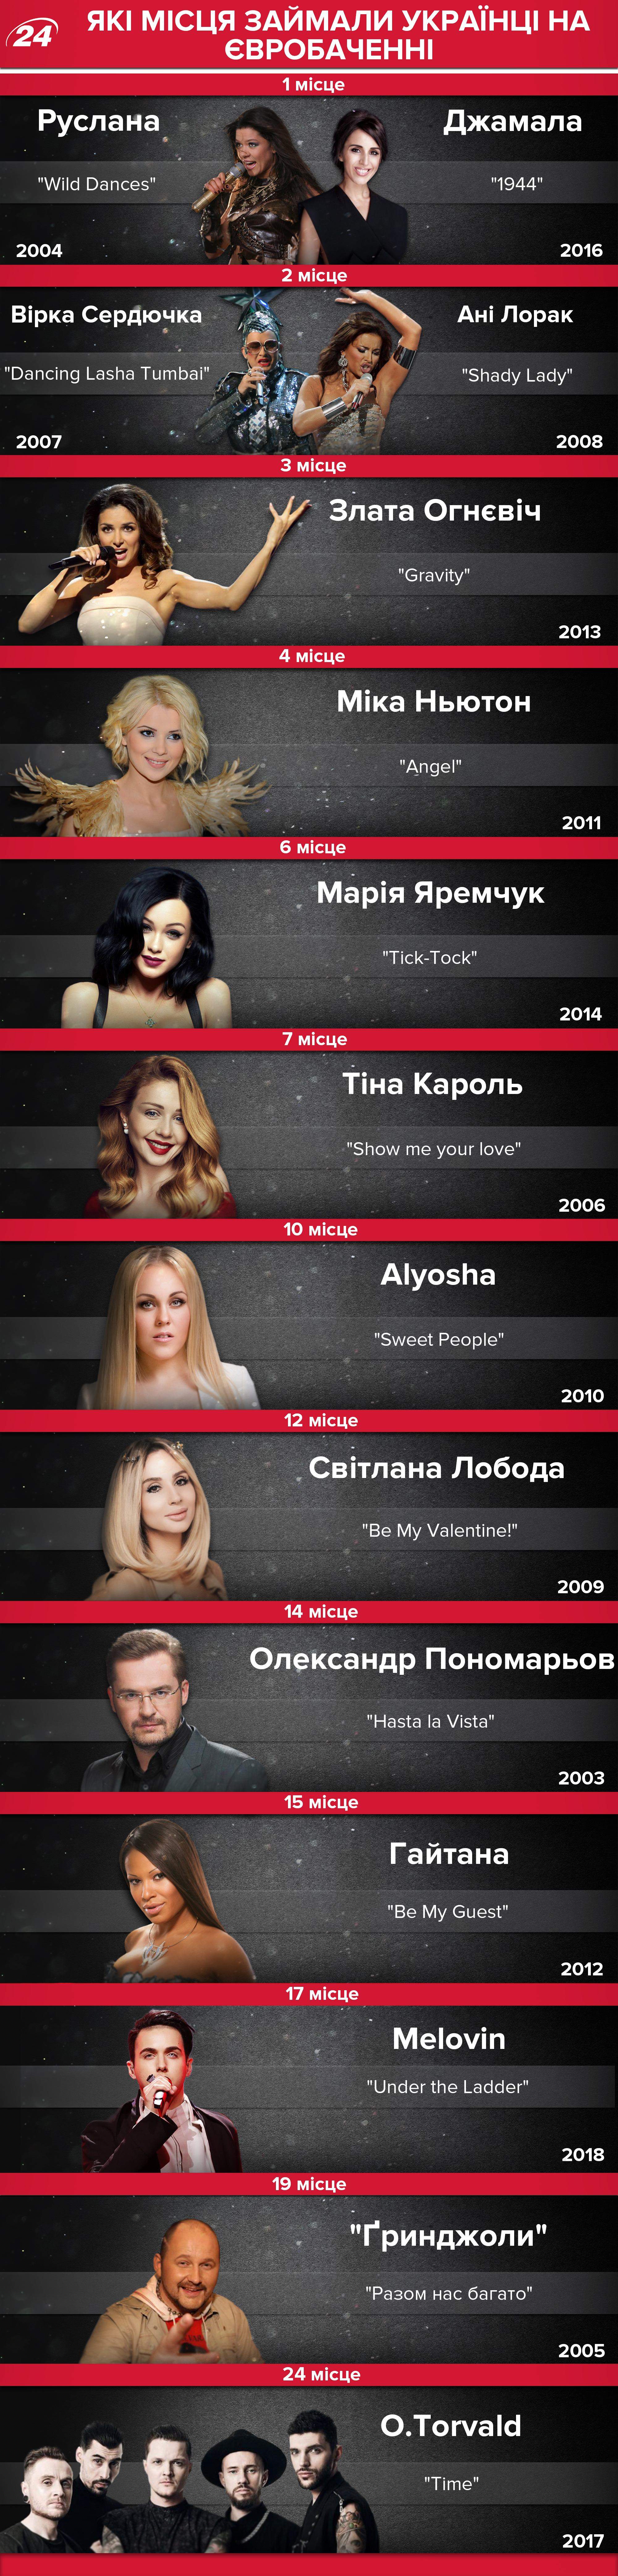 Україна на Євробачення: які місця здобували українці на конкурсі